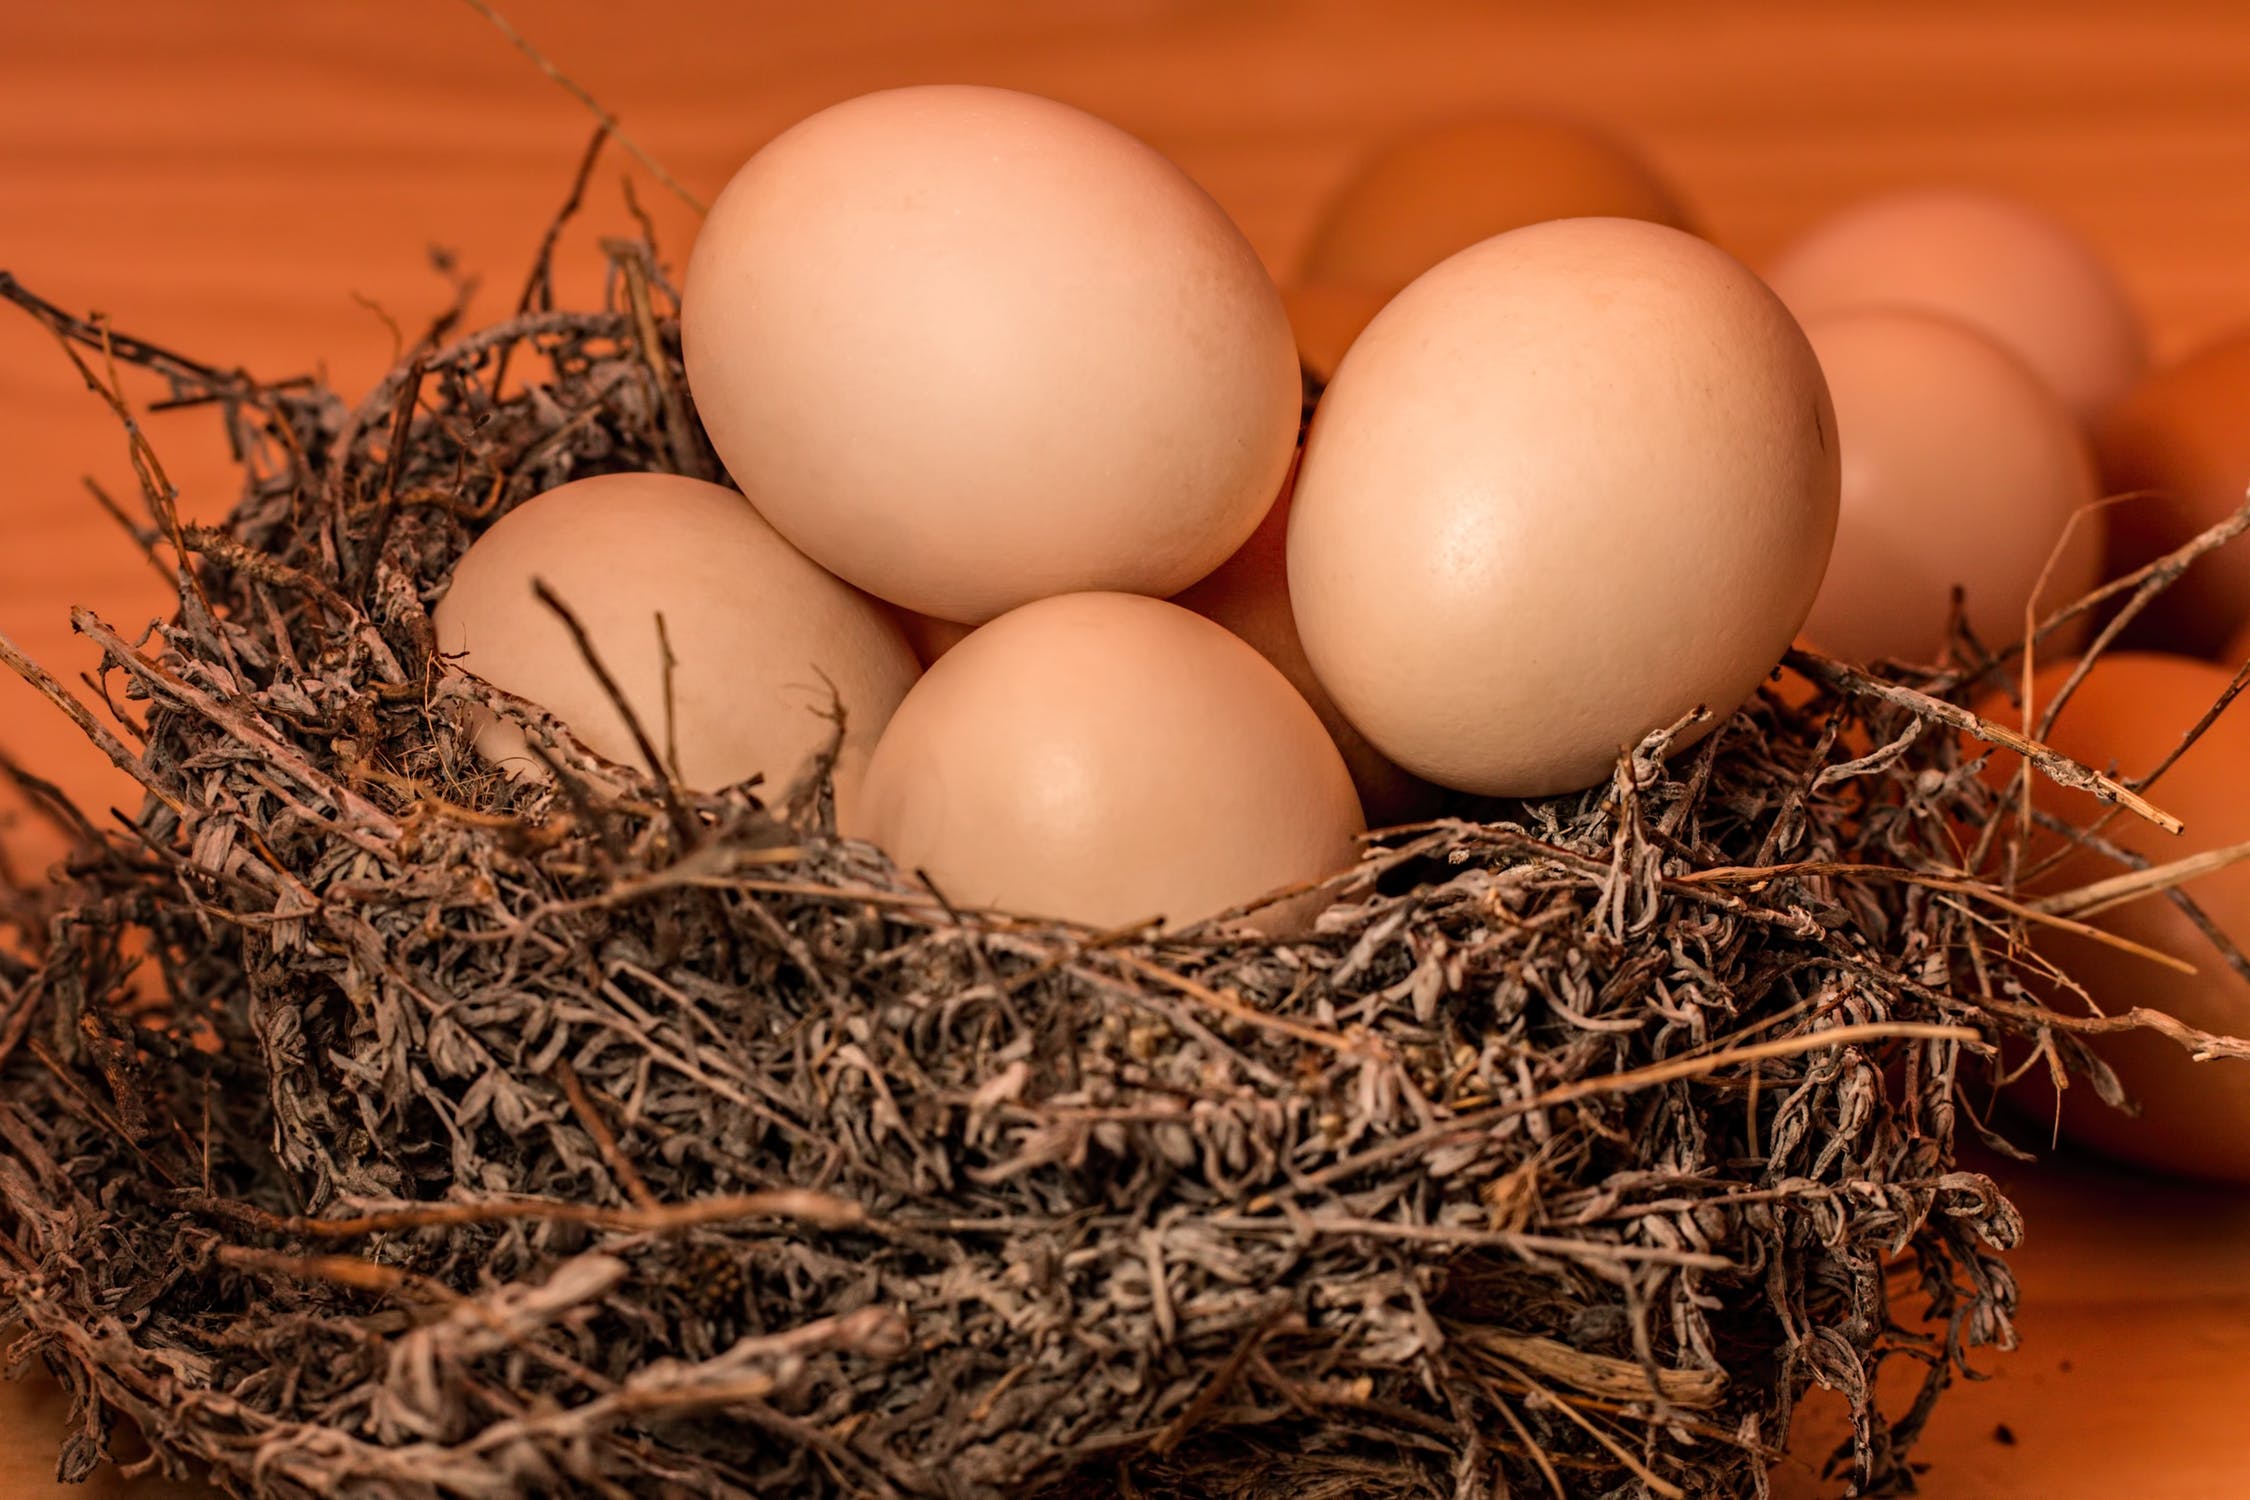 crowded-nest-egg-full - 副本.jpg